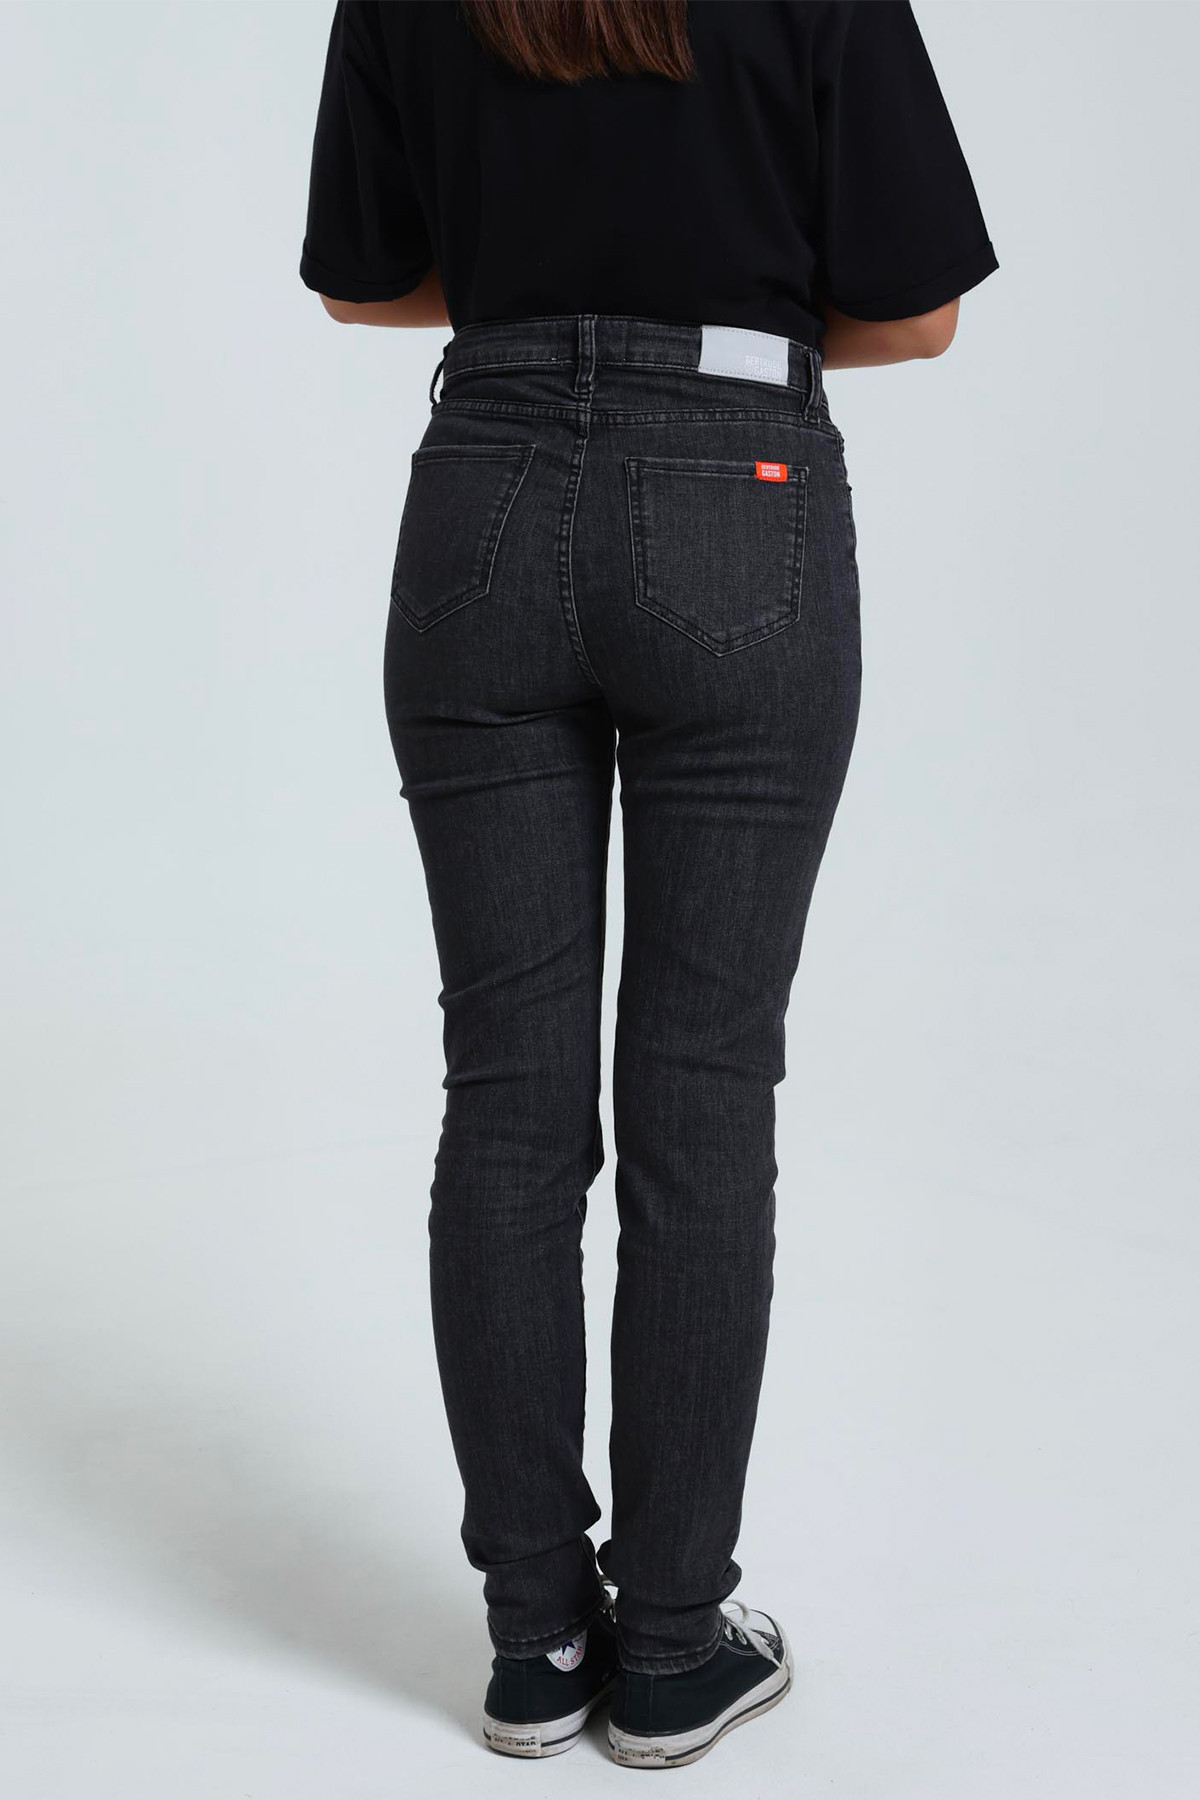 Le jeans Anna coupe slim black pour femme GertrudeGaston